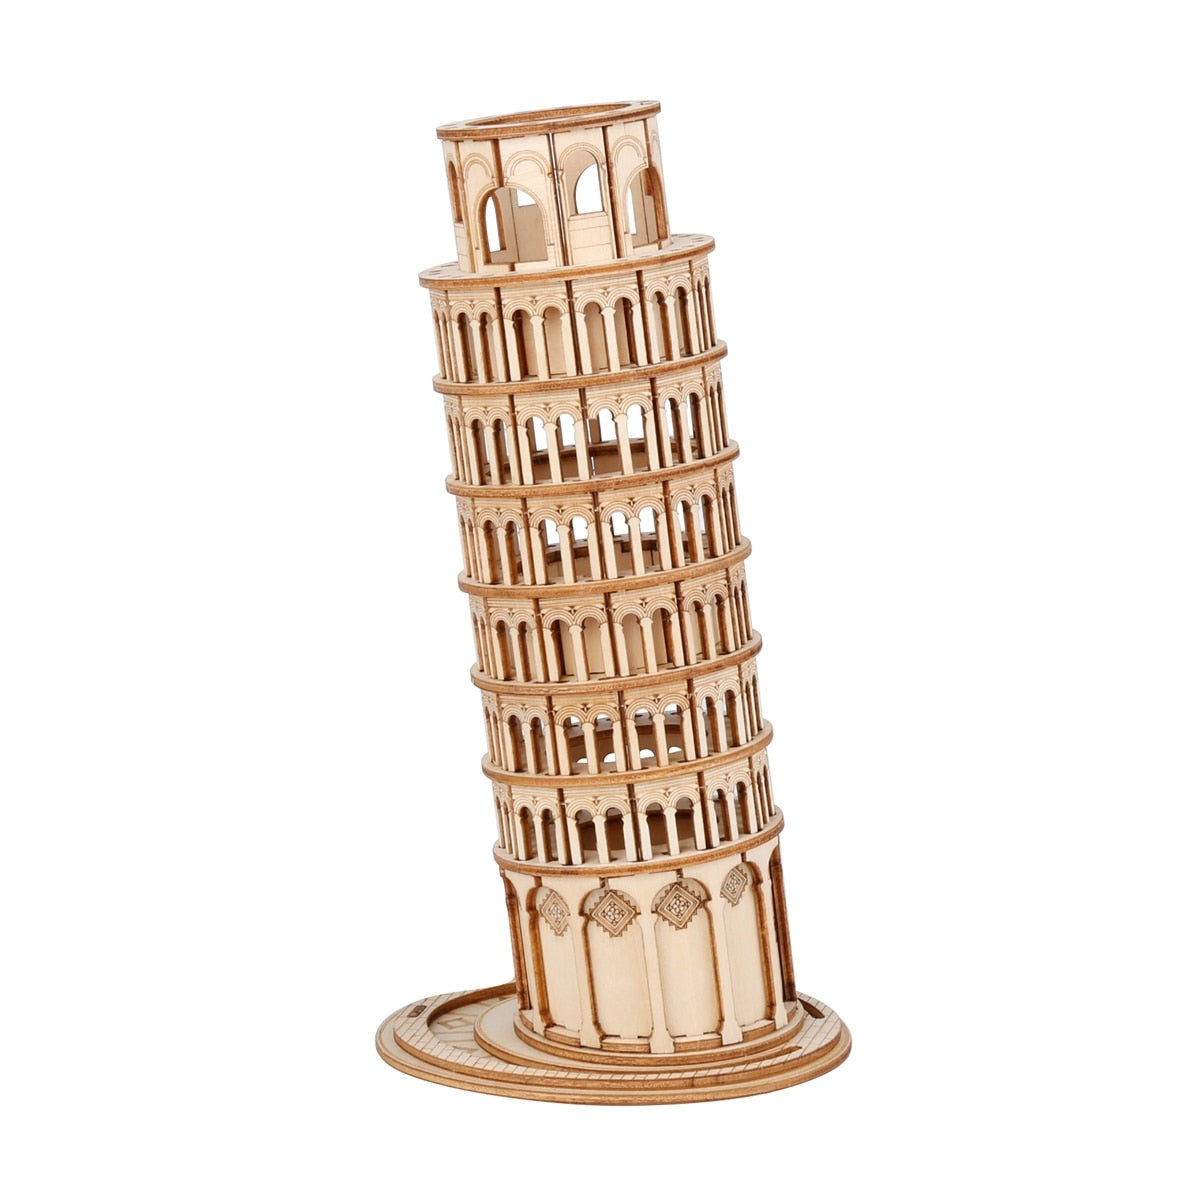 3D Tower Bridge Big Ben Famous Building Wooden Puzzle Game